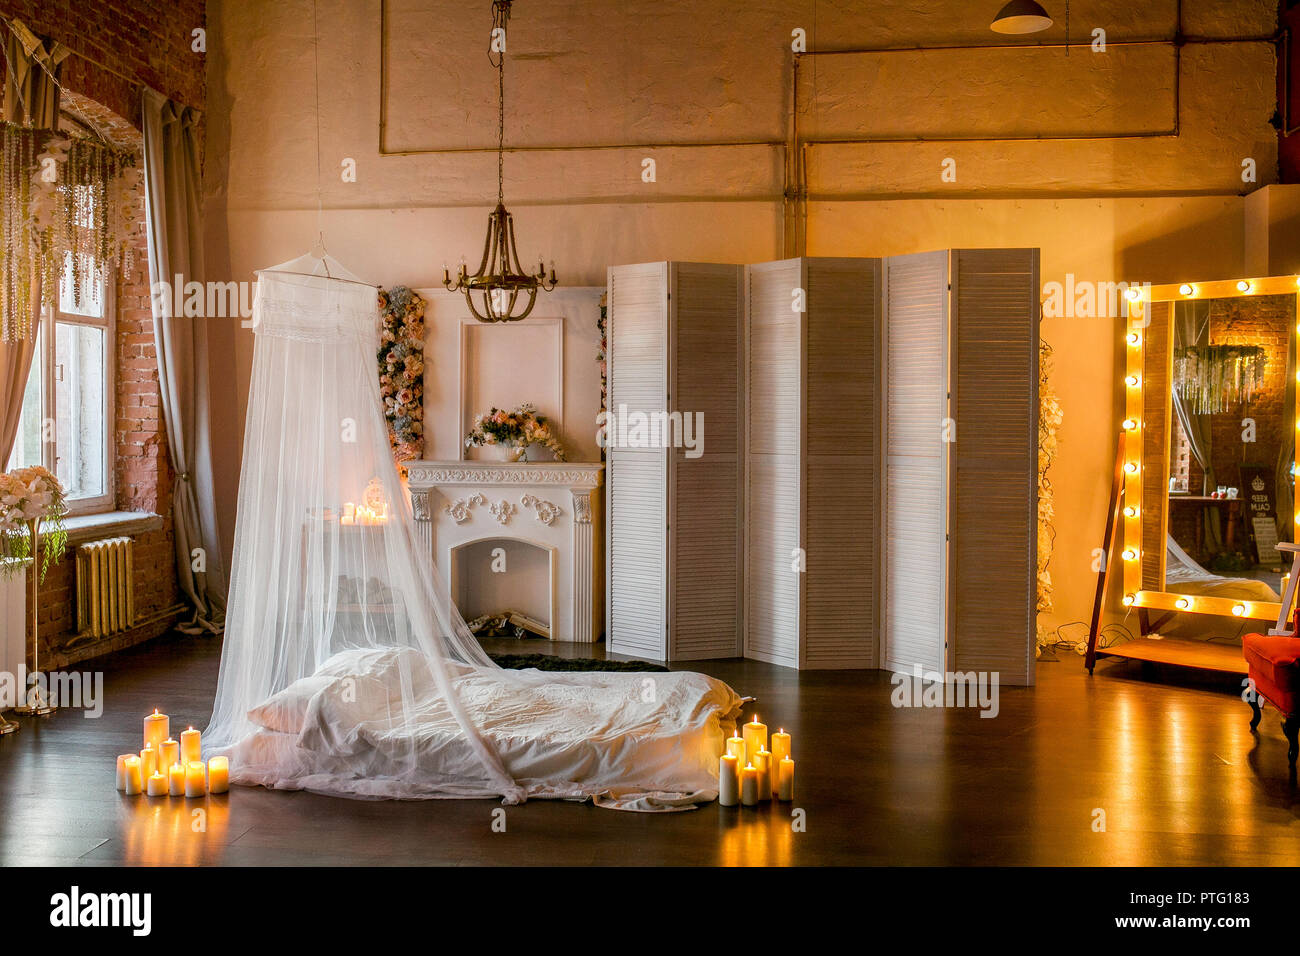 Loft-stil Zimmer mit einem Bett, einem Baldachin, ein weißer Kamin mit einem Blumenarrangement, einen weißen Bildschirm, einem großen Spiegel und brennende Kerzen Stockfoto